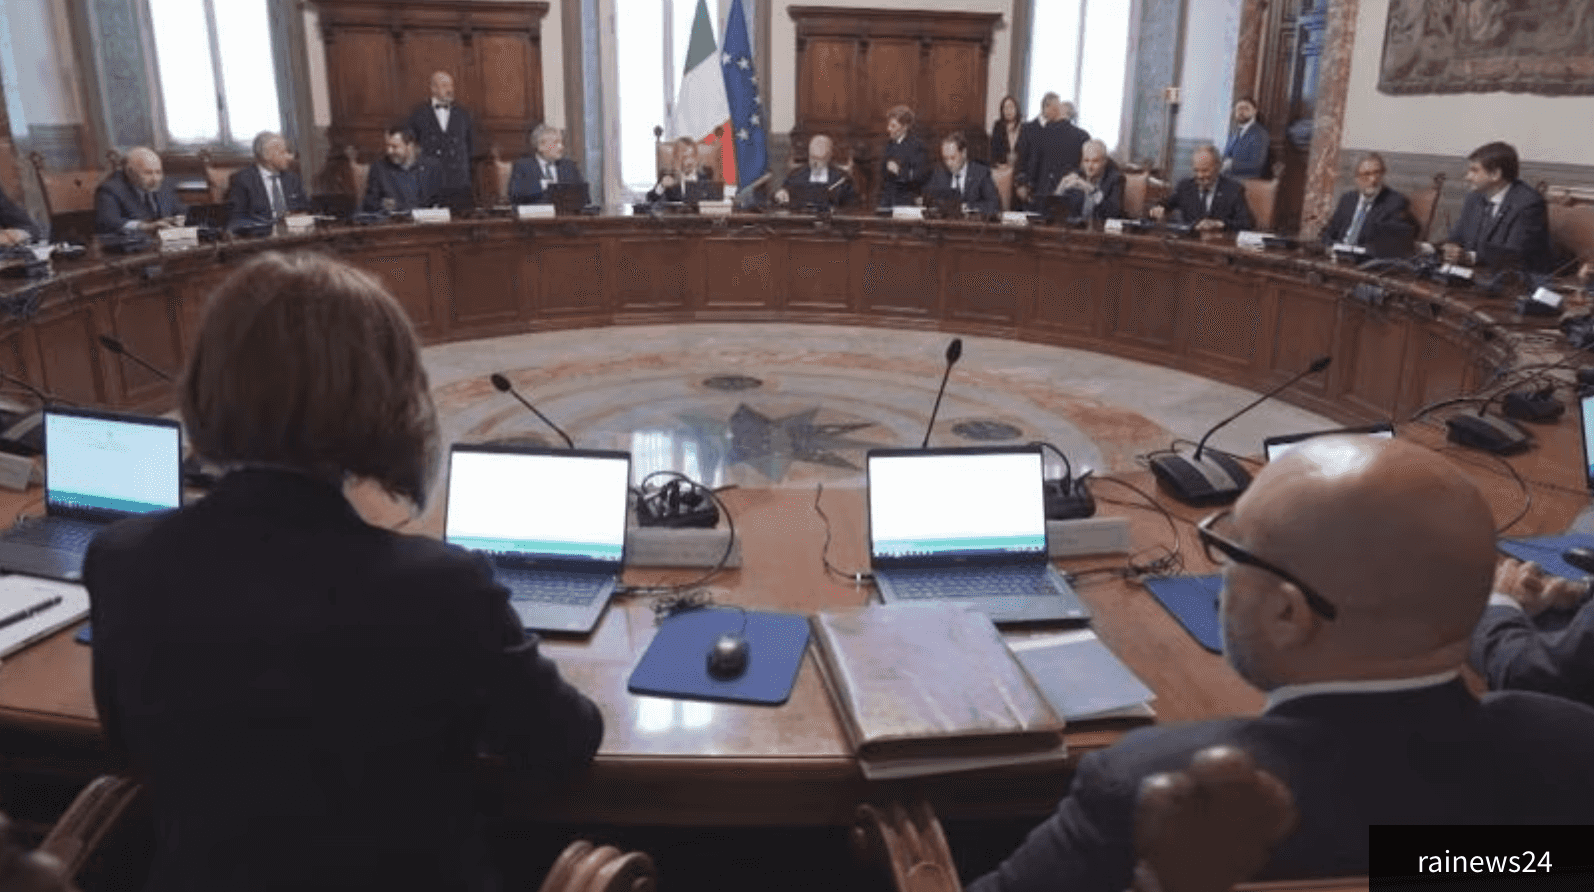 Riforma fiscale: approvato disegno di legge delega dal Consiglio dei ministri, Meloni parla di "svolta necessaria" anche il ponte sullo Stretto